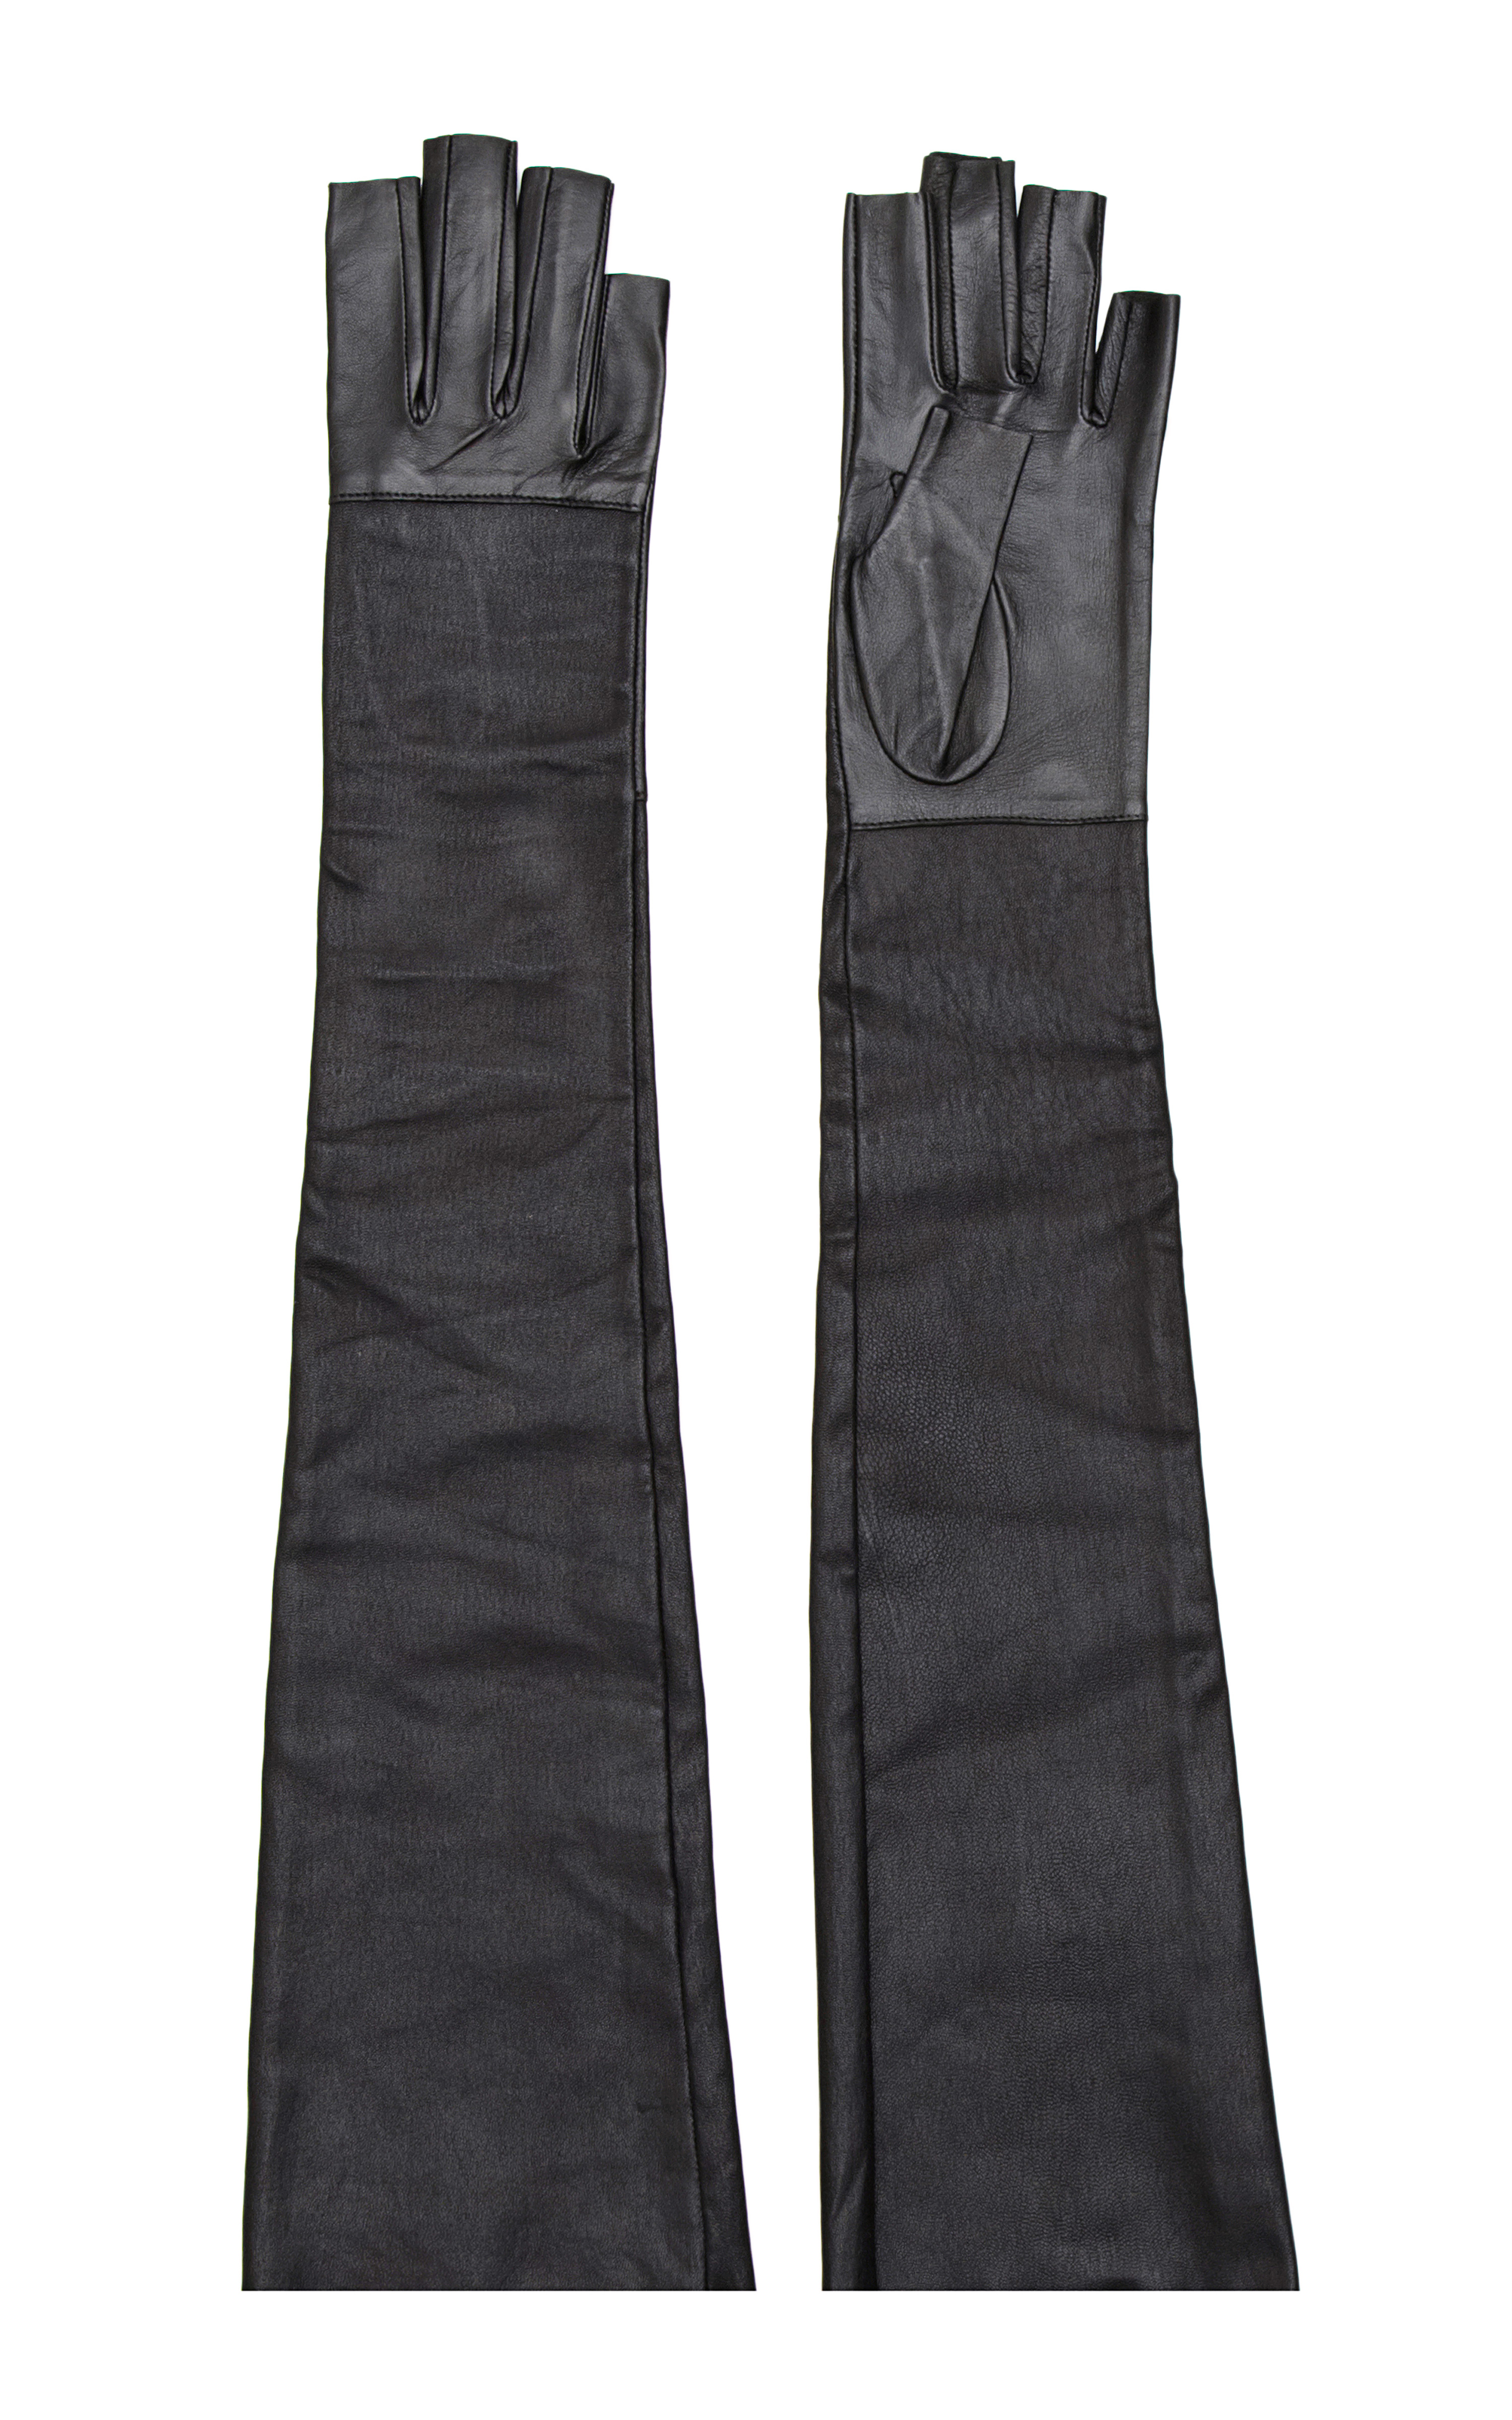 Imoni Long Fingerless Leather Gloves in Black | Lyst